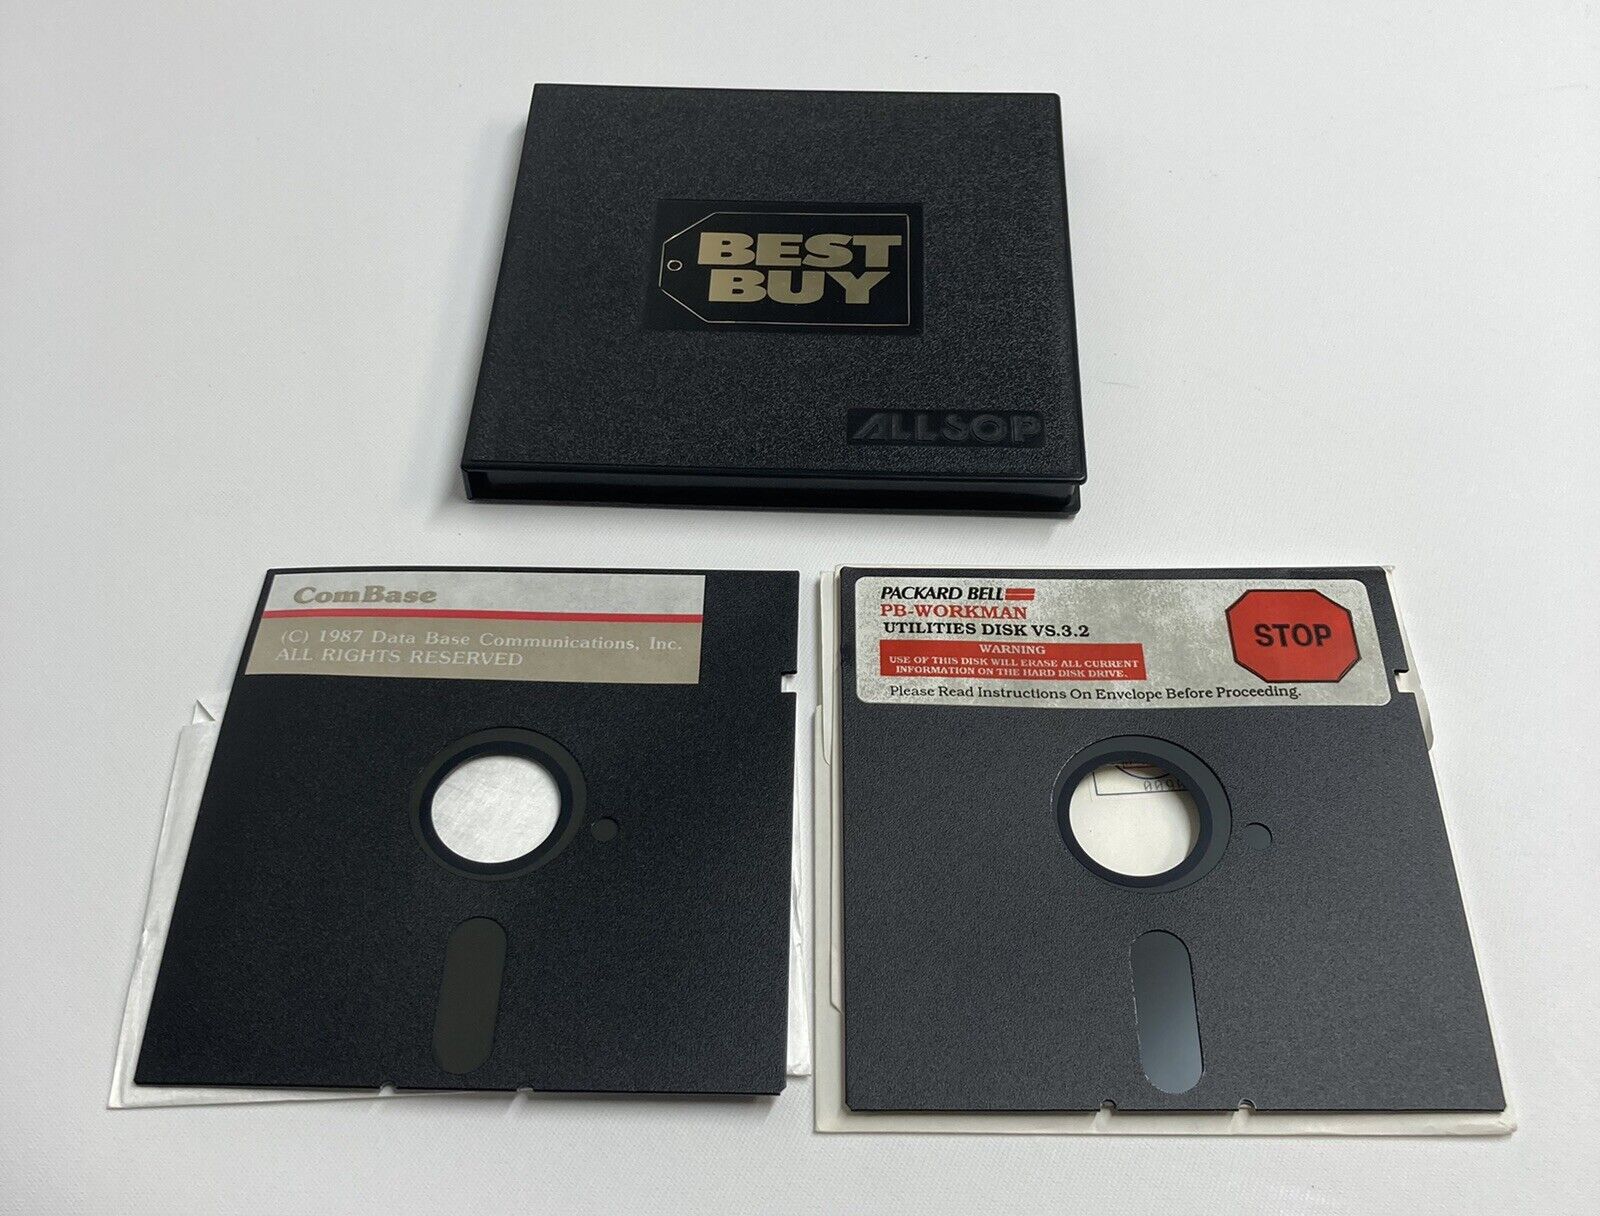 Vintage Best Buy Allsop 5.25” Floppy Disk Case Holder with 2 Floppy Disks